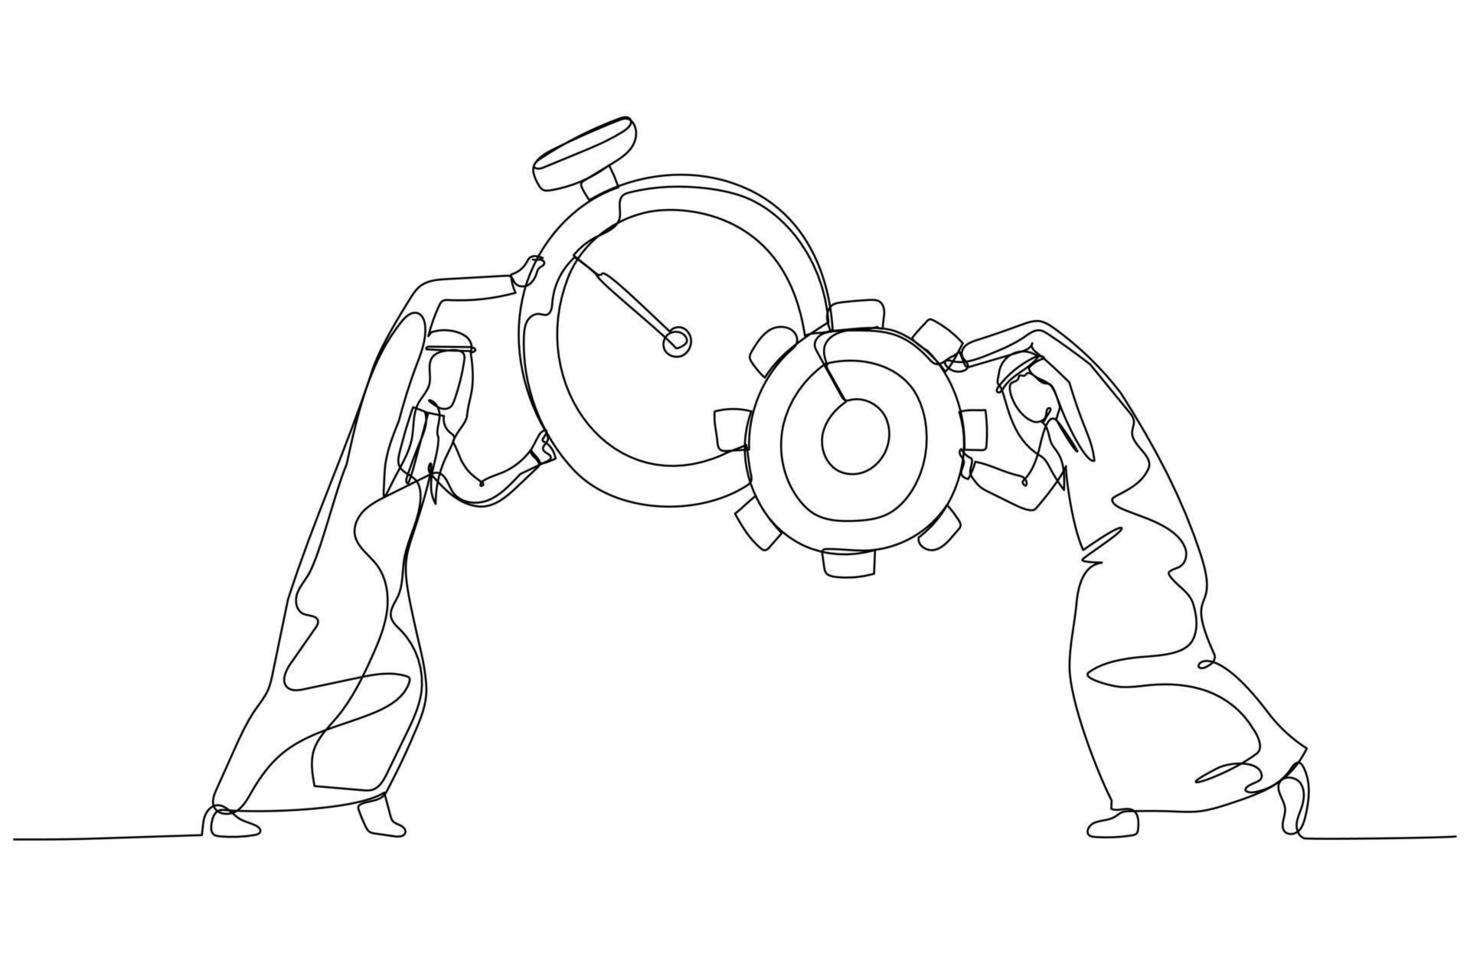 desenho animado do homem árabe combina relógio com e conceito de roda dentada de gerenciamento de tempo e produção. estilo de arte de linha única vetor